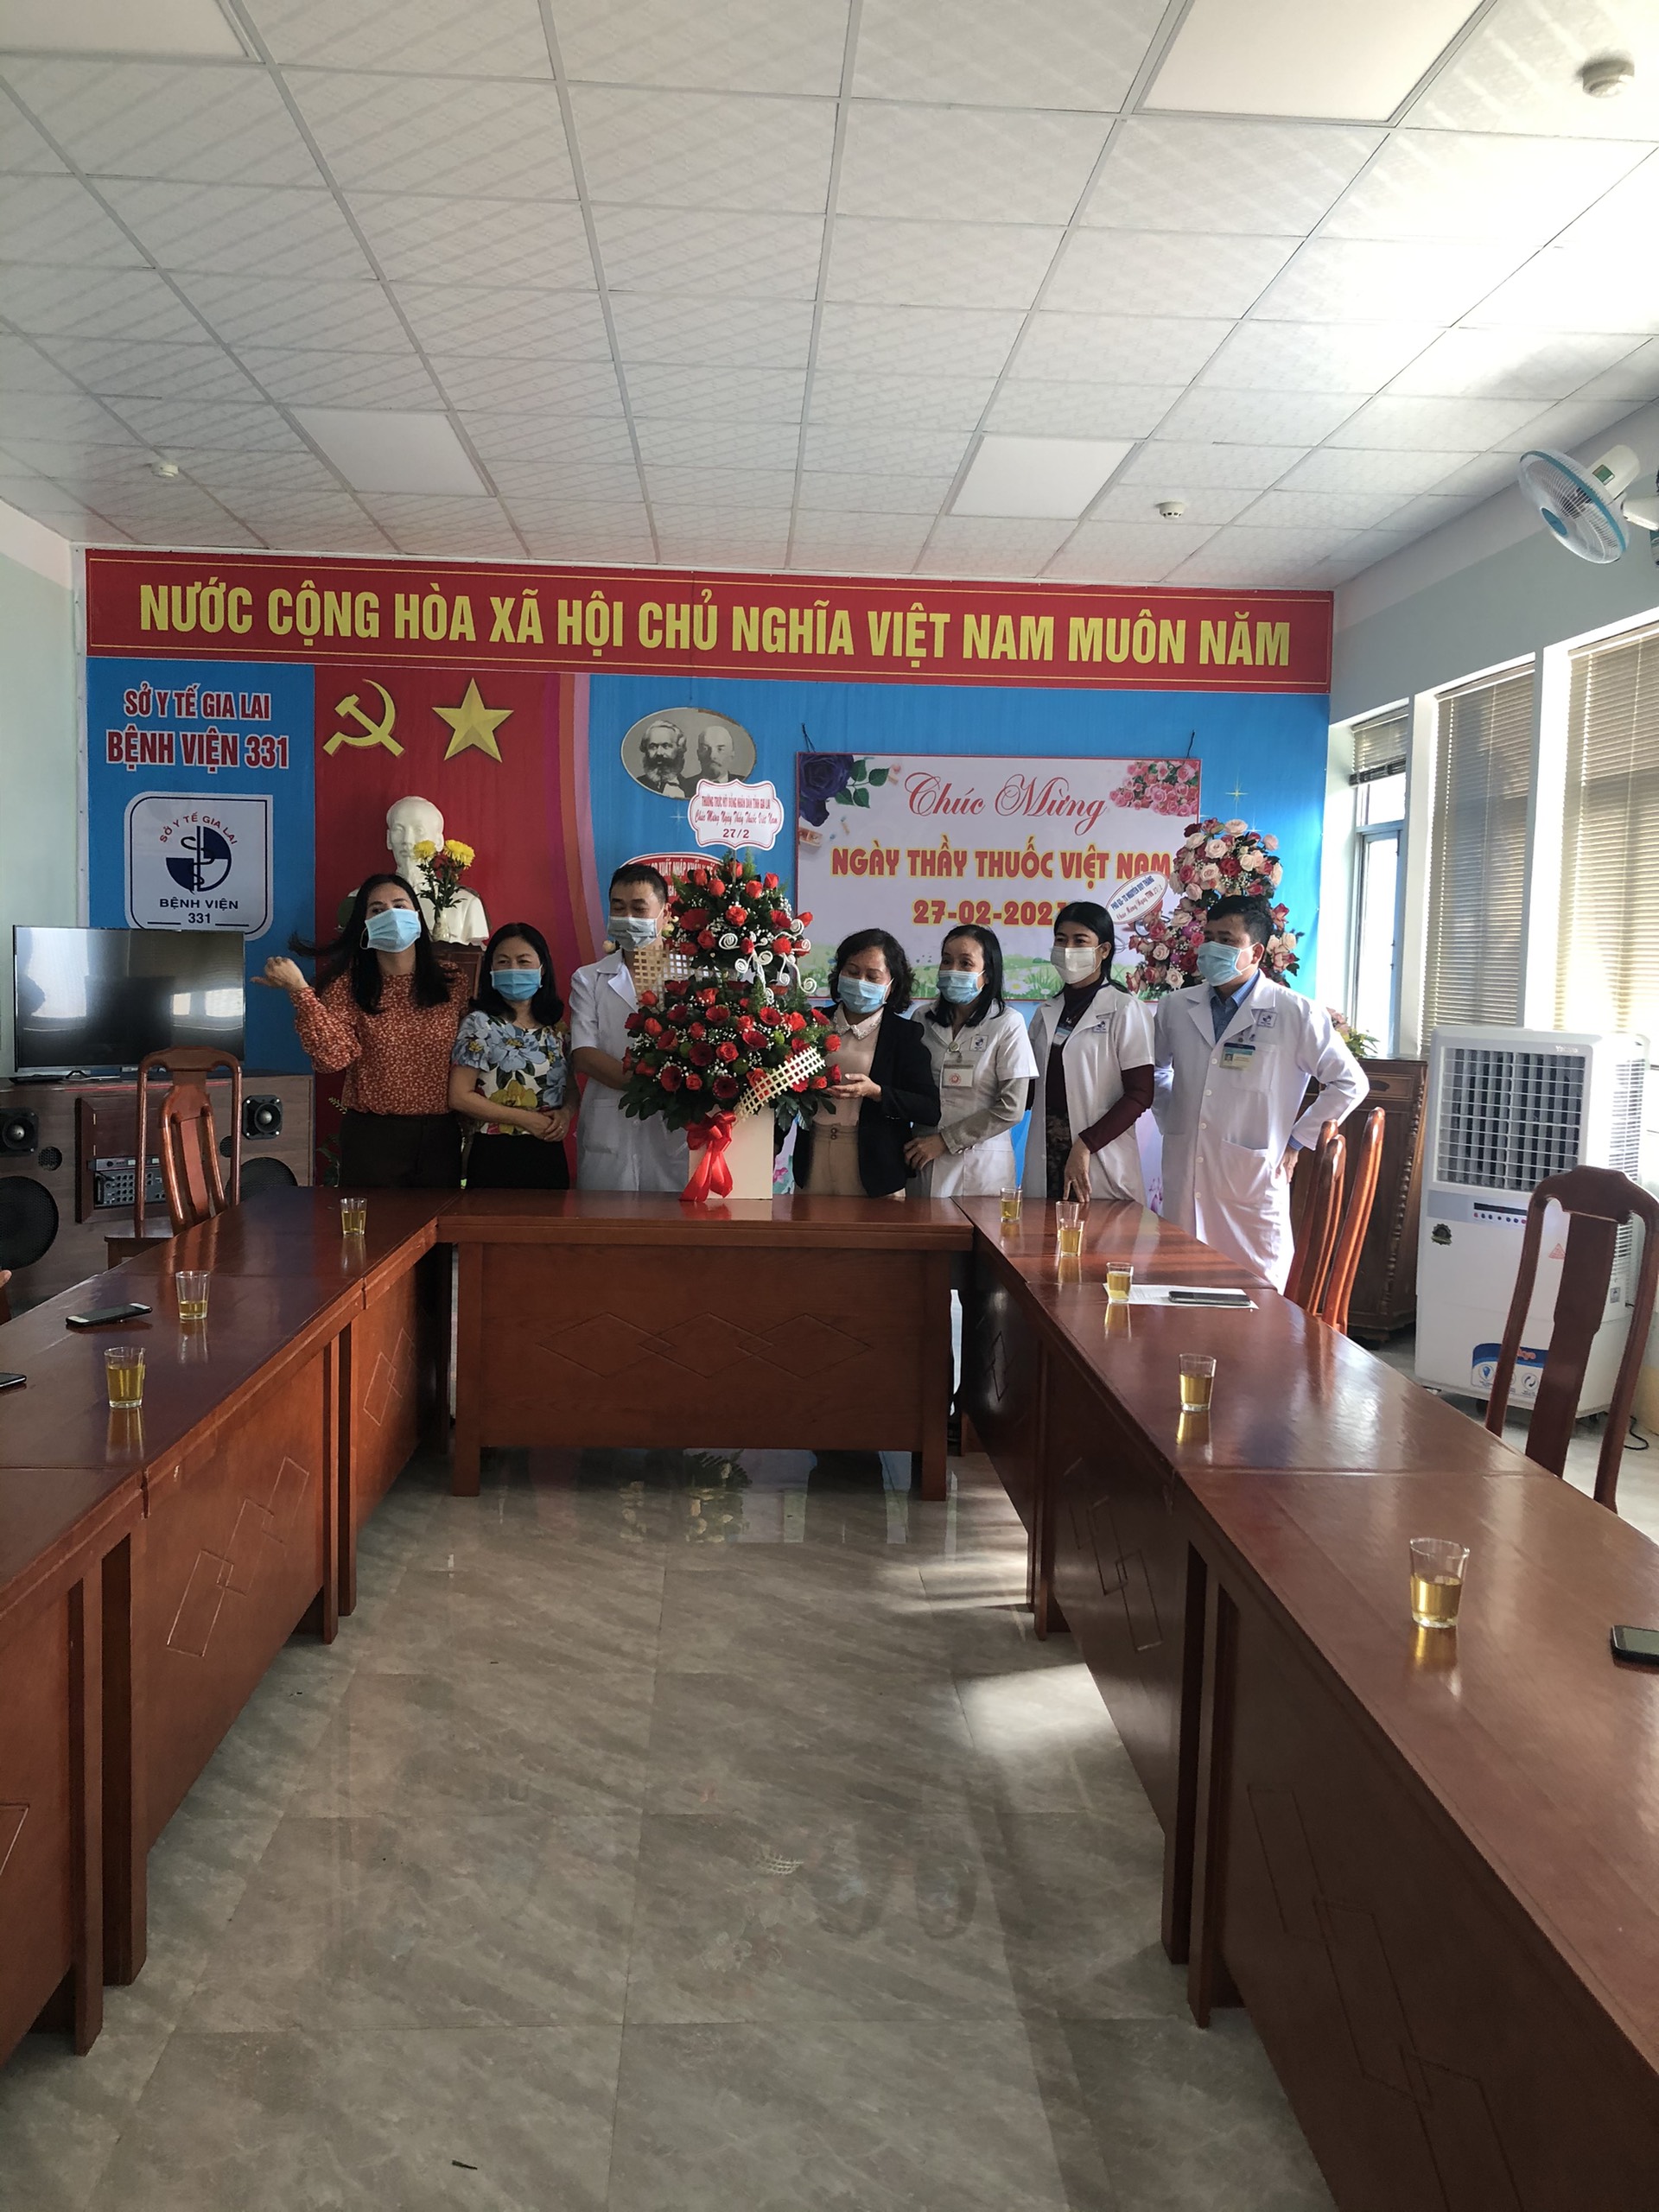 Bệnh viện 331 xin chân thành cảm ơn UBND, HĐND tỉnh cùng các cơ quan đơn vị đã đến thăm và tặng hoa chúc mừng nhân ngày Thầy thuốc Việt Nam